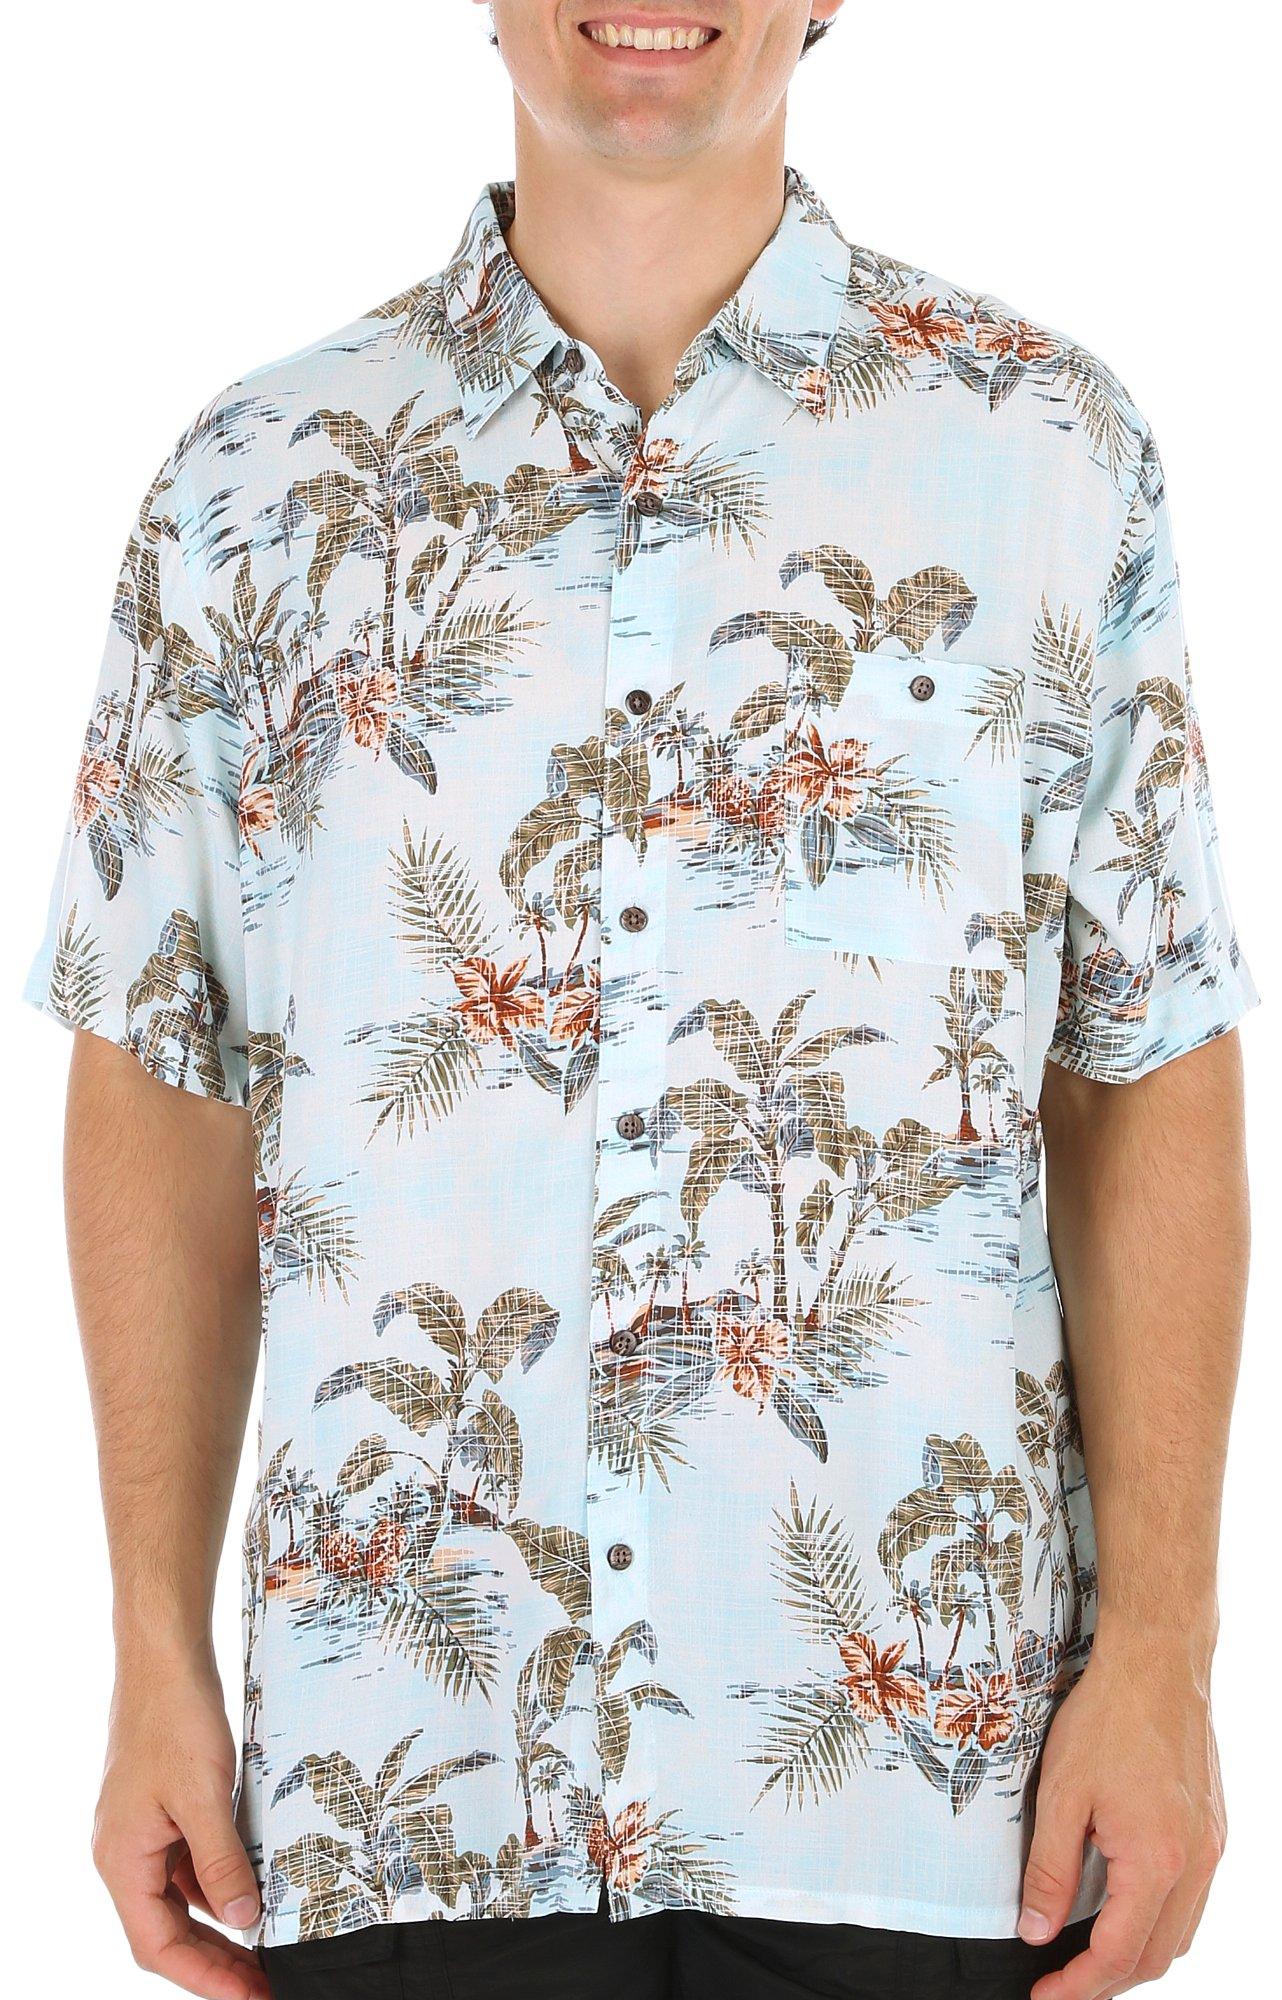 Mens Aqua Floral Button-Down Short Sleeve Shirt